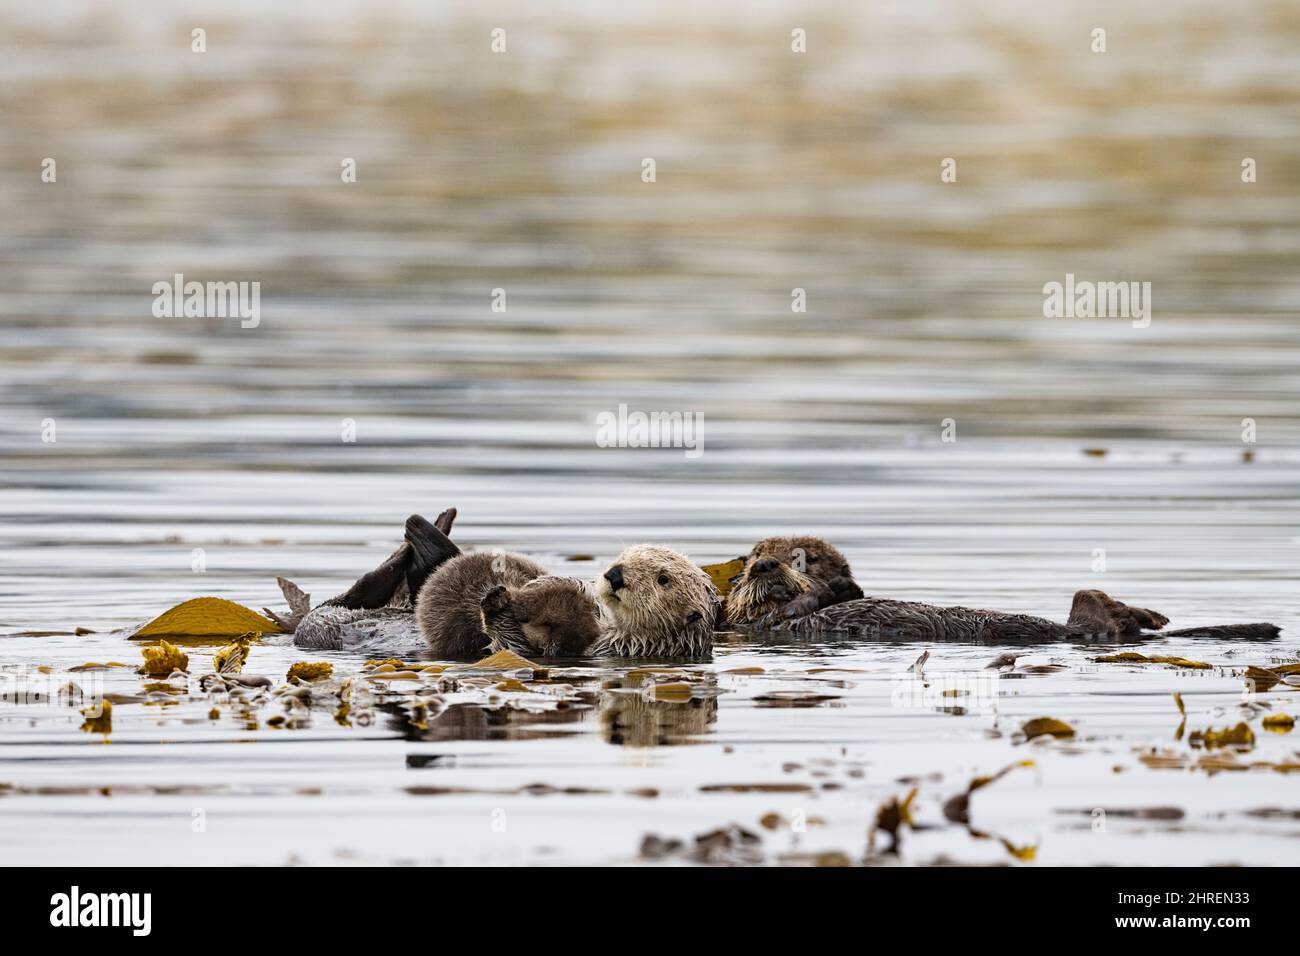 Kalifornische Seeotter, Enhyrdra lutris nereis ( bedrohte Arten ), Mutter hält Welpen, während sie im Seetang-Bett ruht, unterstützt von schwimmenden Seetang-Wedeln, Stockfoto